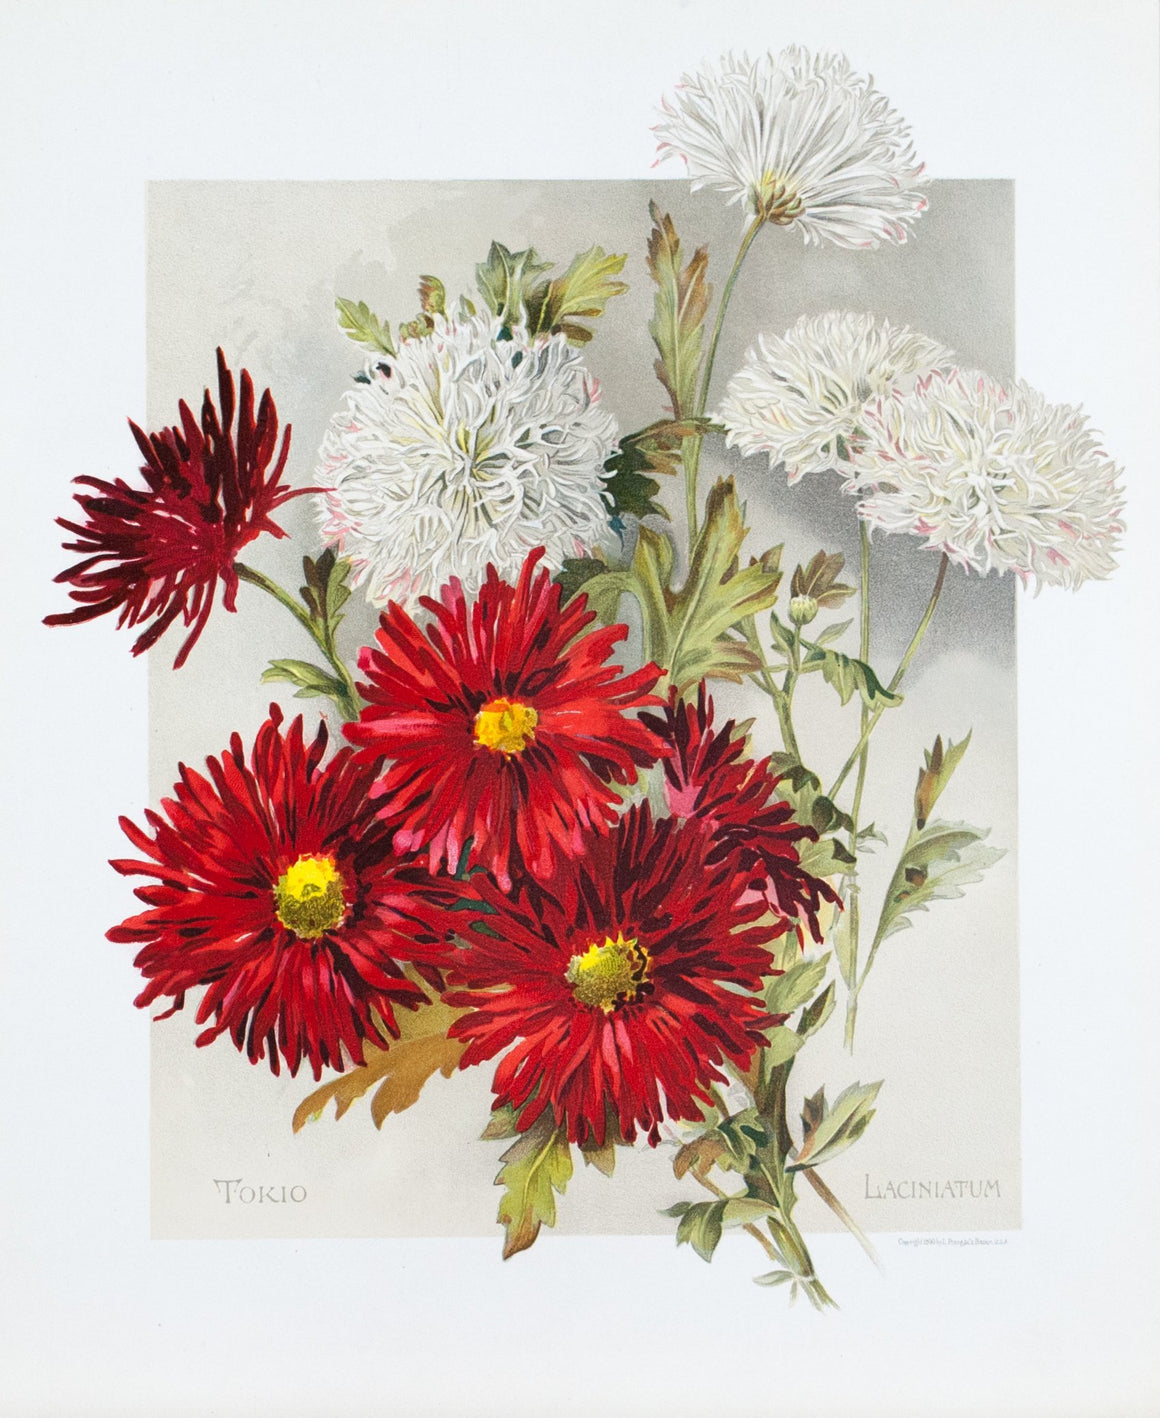 1890 Tokio and Laciniatum Chrysanthemums - Mathews 